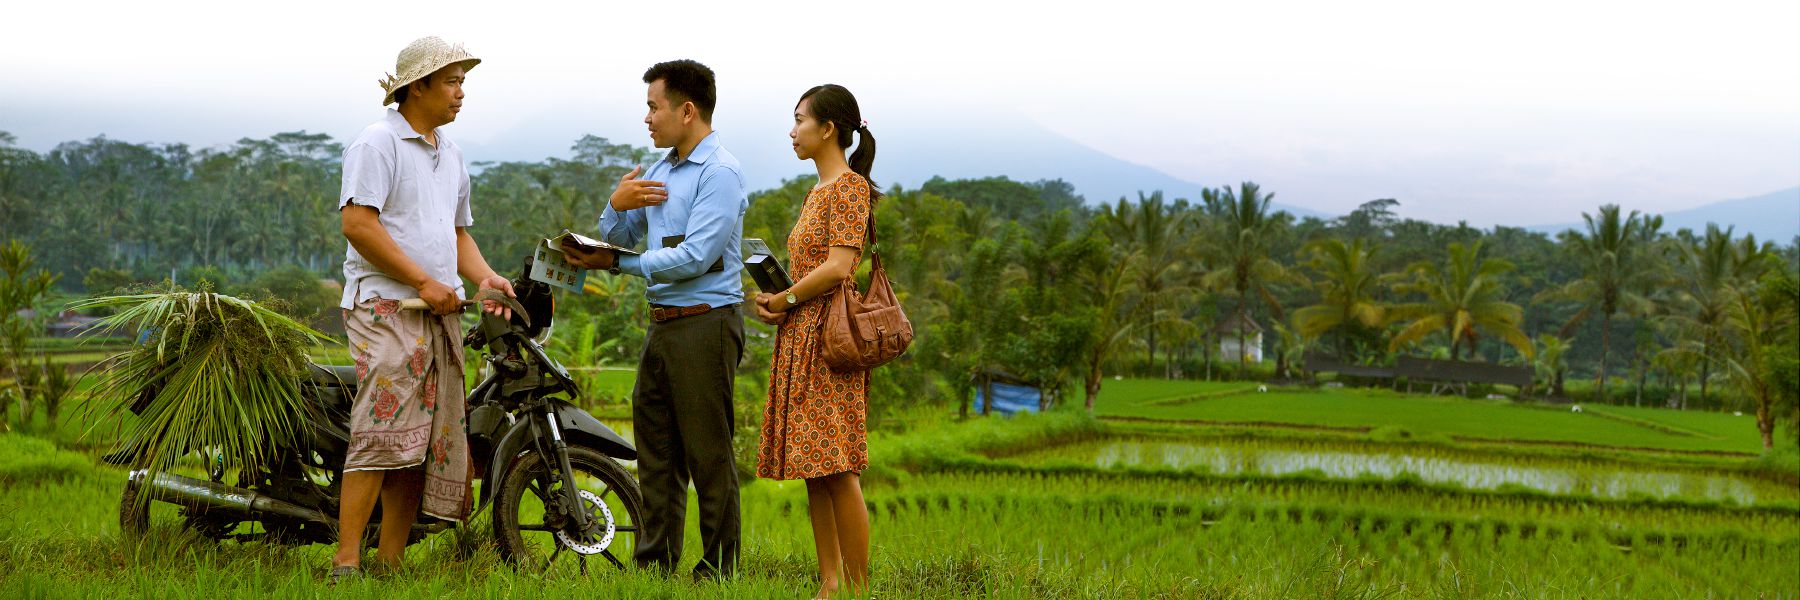 دو شاهد یَهُوَه در مزرعهٔ برنج به مردی موعظه کند.